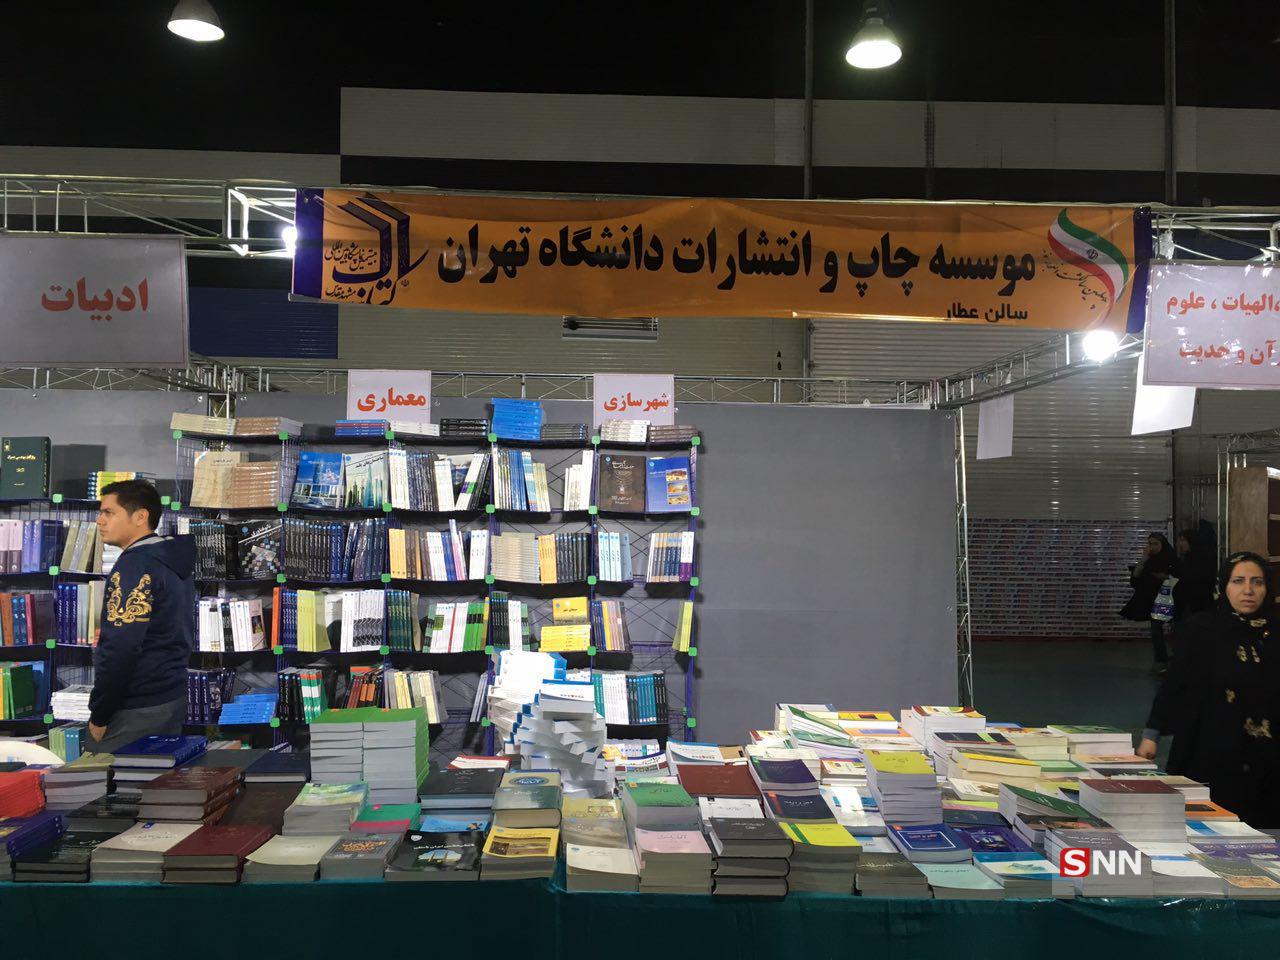 بیست سه شنبه/موسسات کنکوری نمایشگاه کتاب مشهد را تسخیر کردند/استقبال سرد و معنادار دانشجویان از بیستمین نمایشگاه کتاب